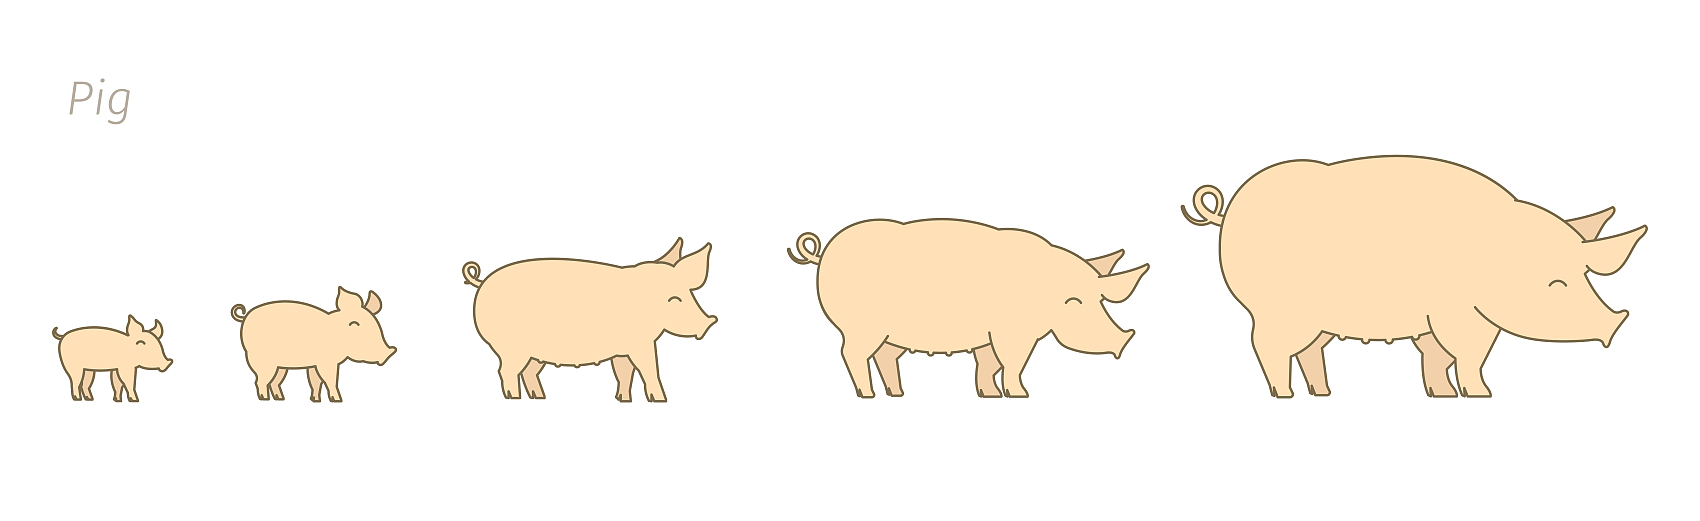 Lợn ở các giai đoạn sinh trưởng khác nhau